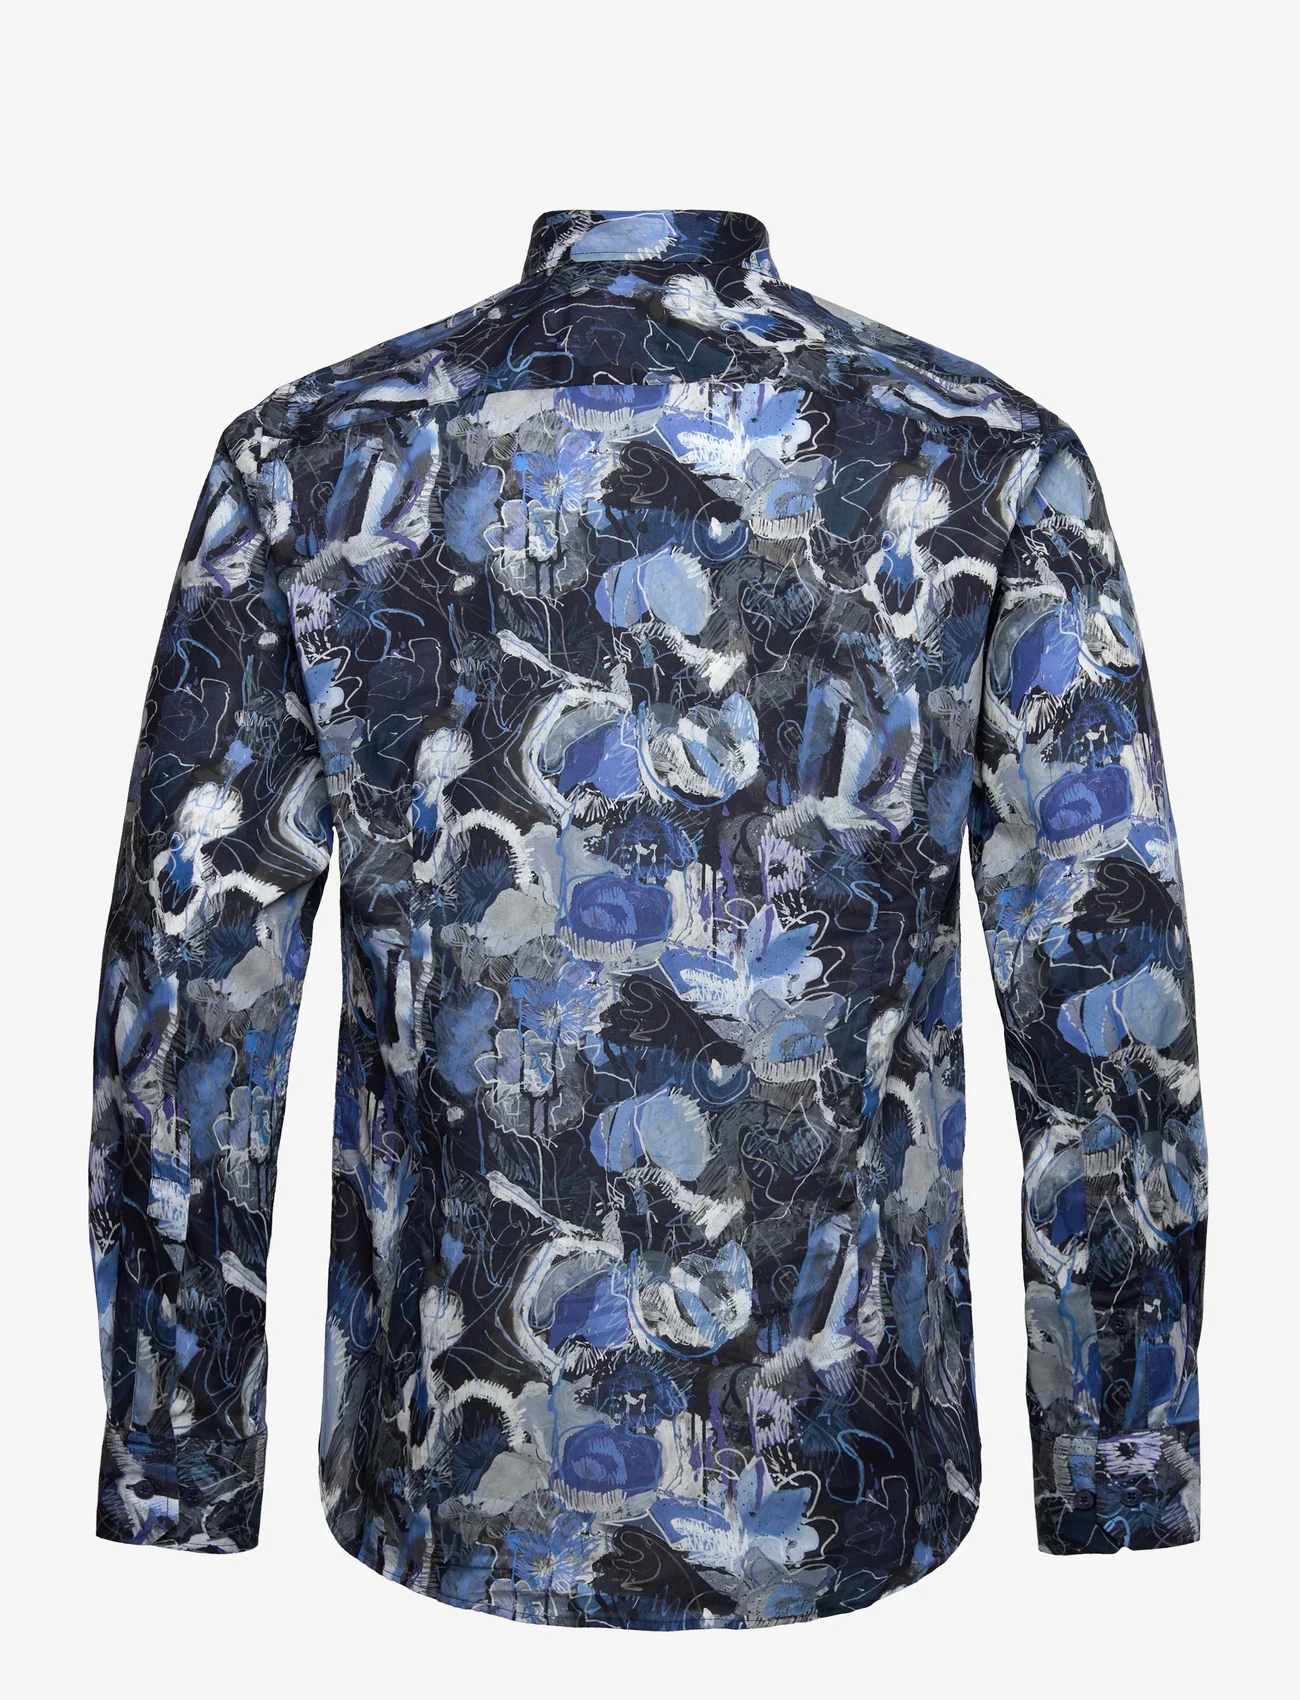 Bosweel Shirts Est. 1937 - Slim fit Mens shirt - muodolliset kauluspaidat - dark blue - 1